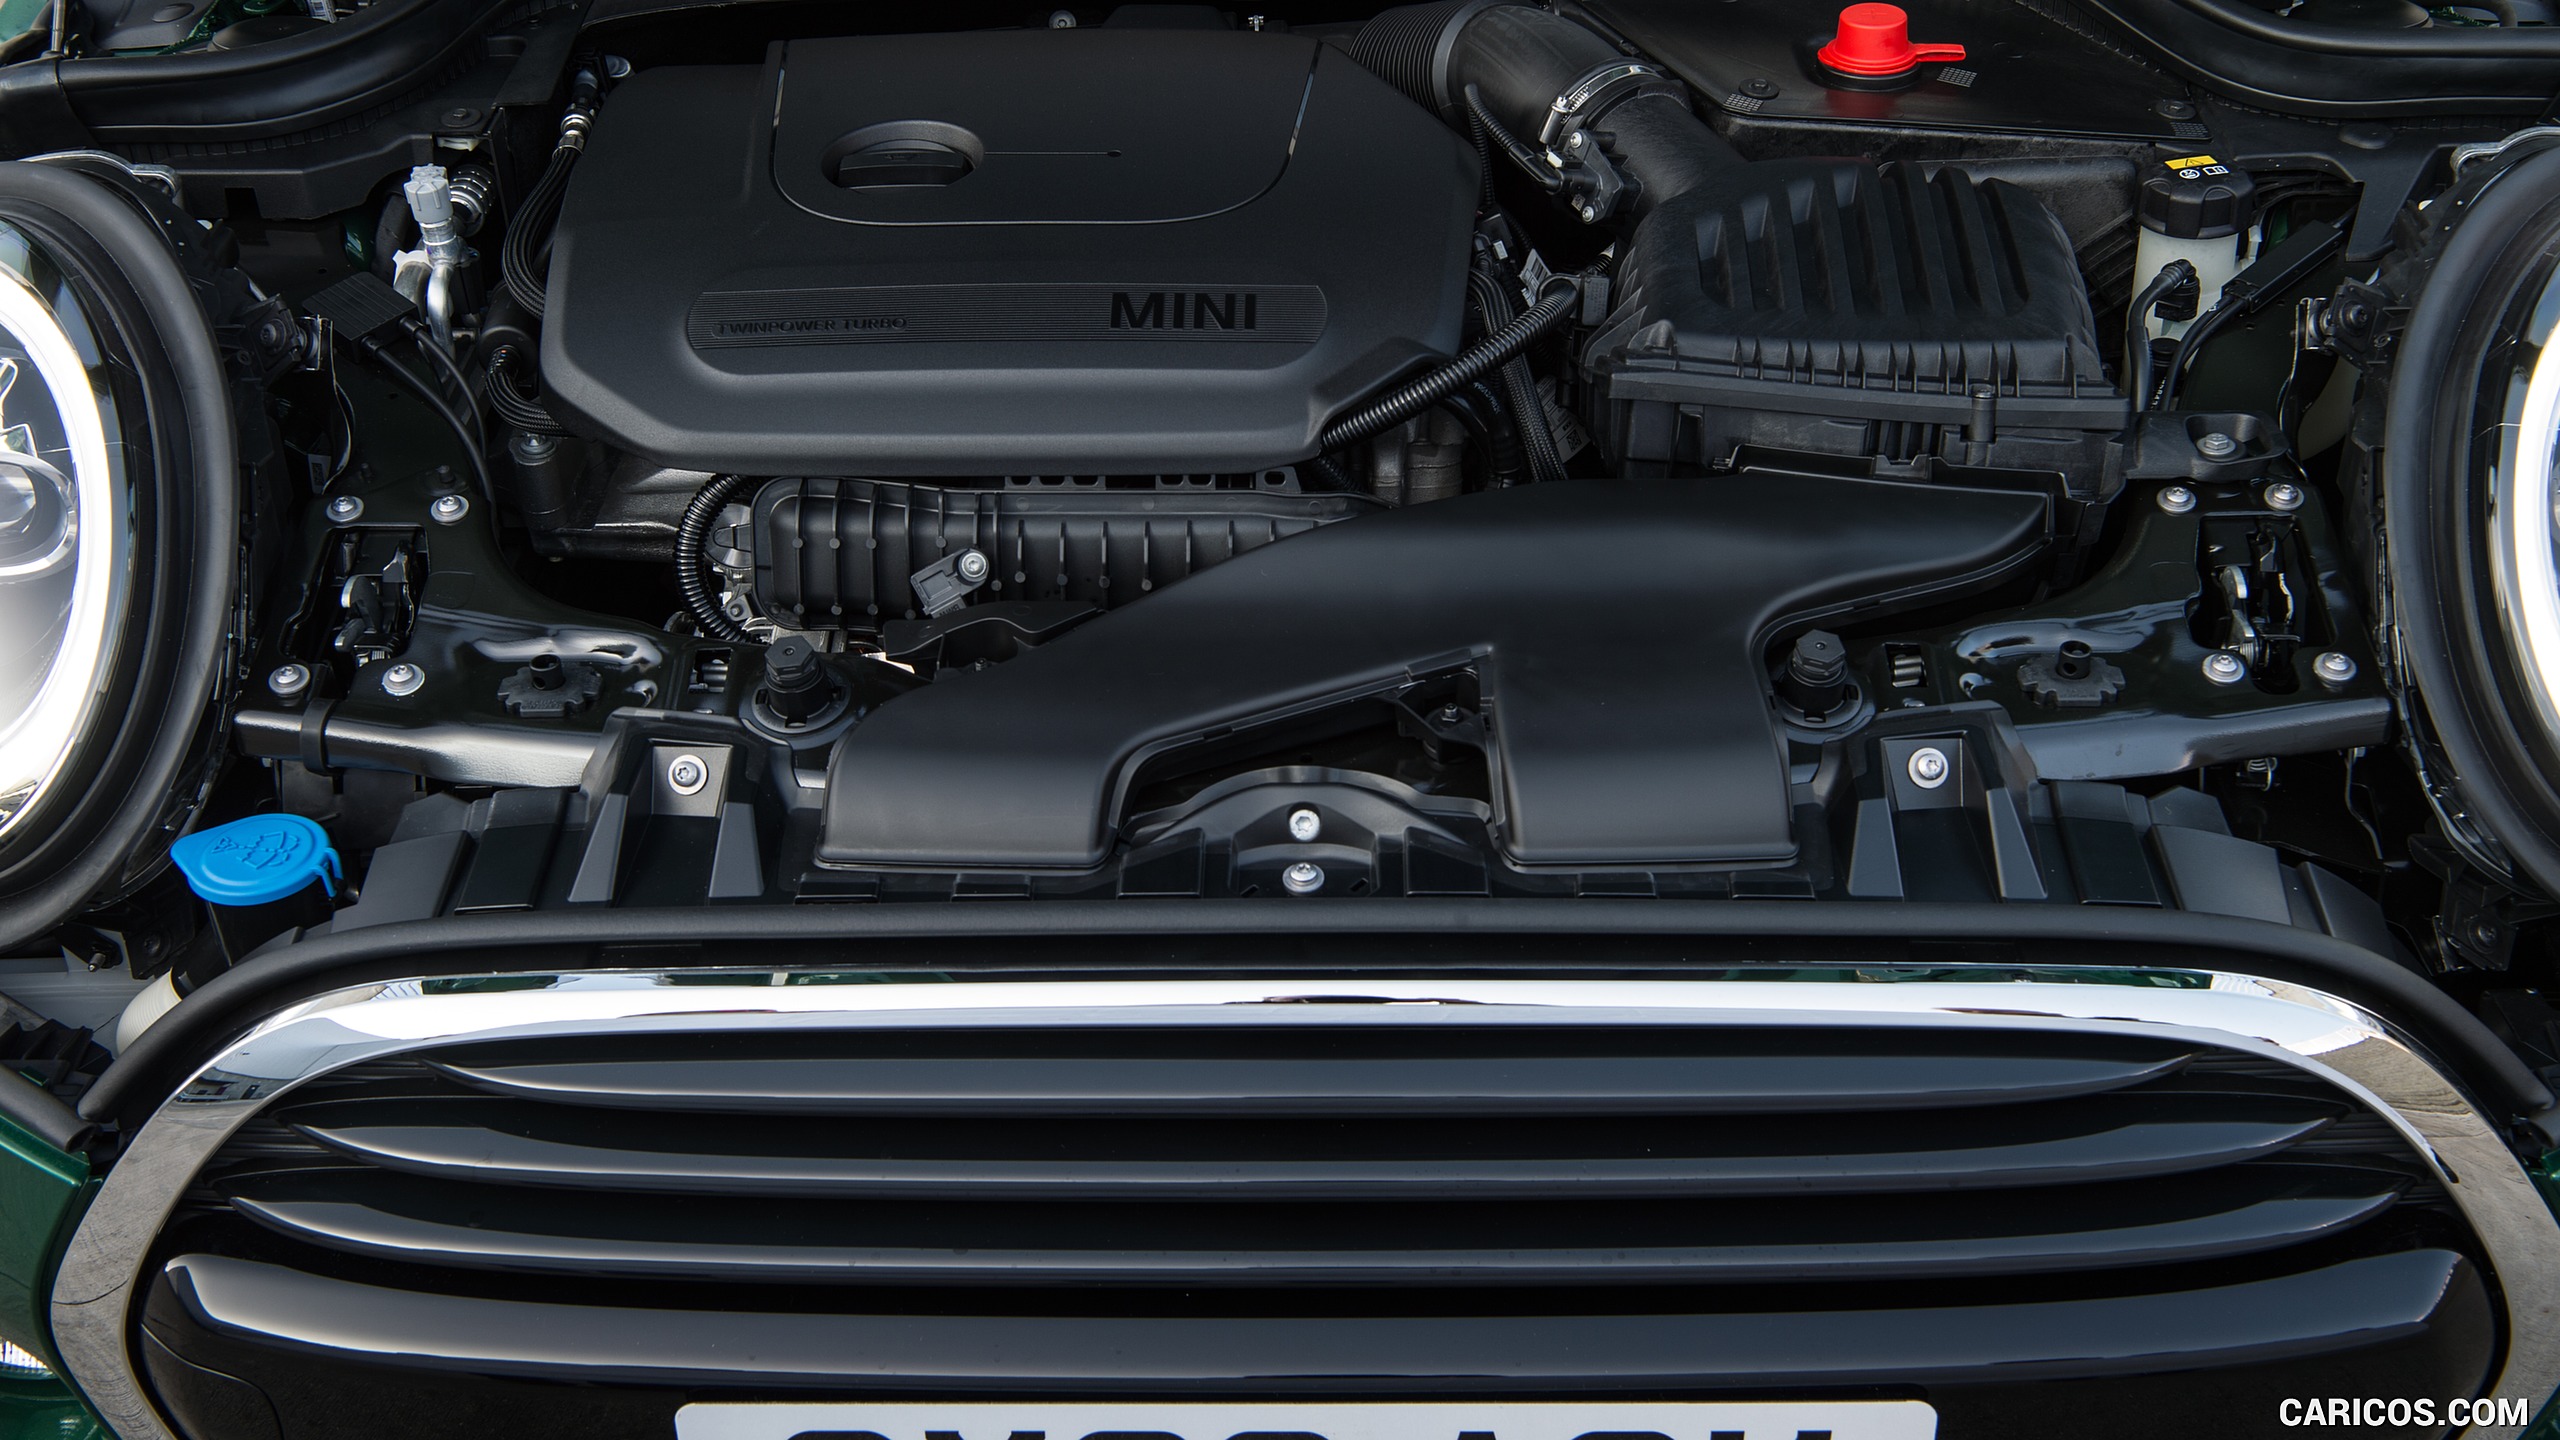 2019 MINI Cooper 3-Door 60 Years Edition - Engine, #80 of 102